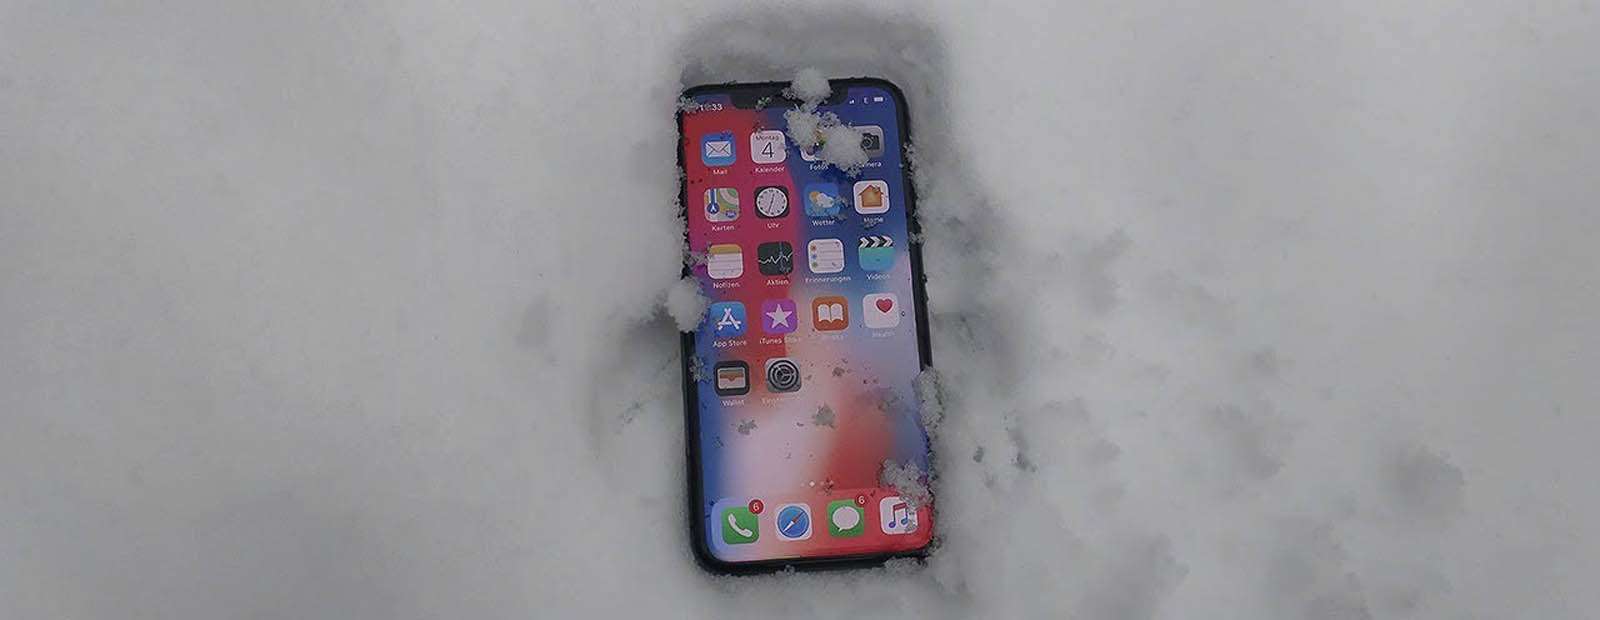 Айфон выключается на холоде? Ваш iPhone быстро разряжается на морозе?